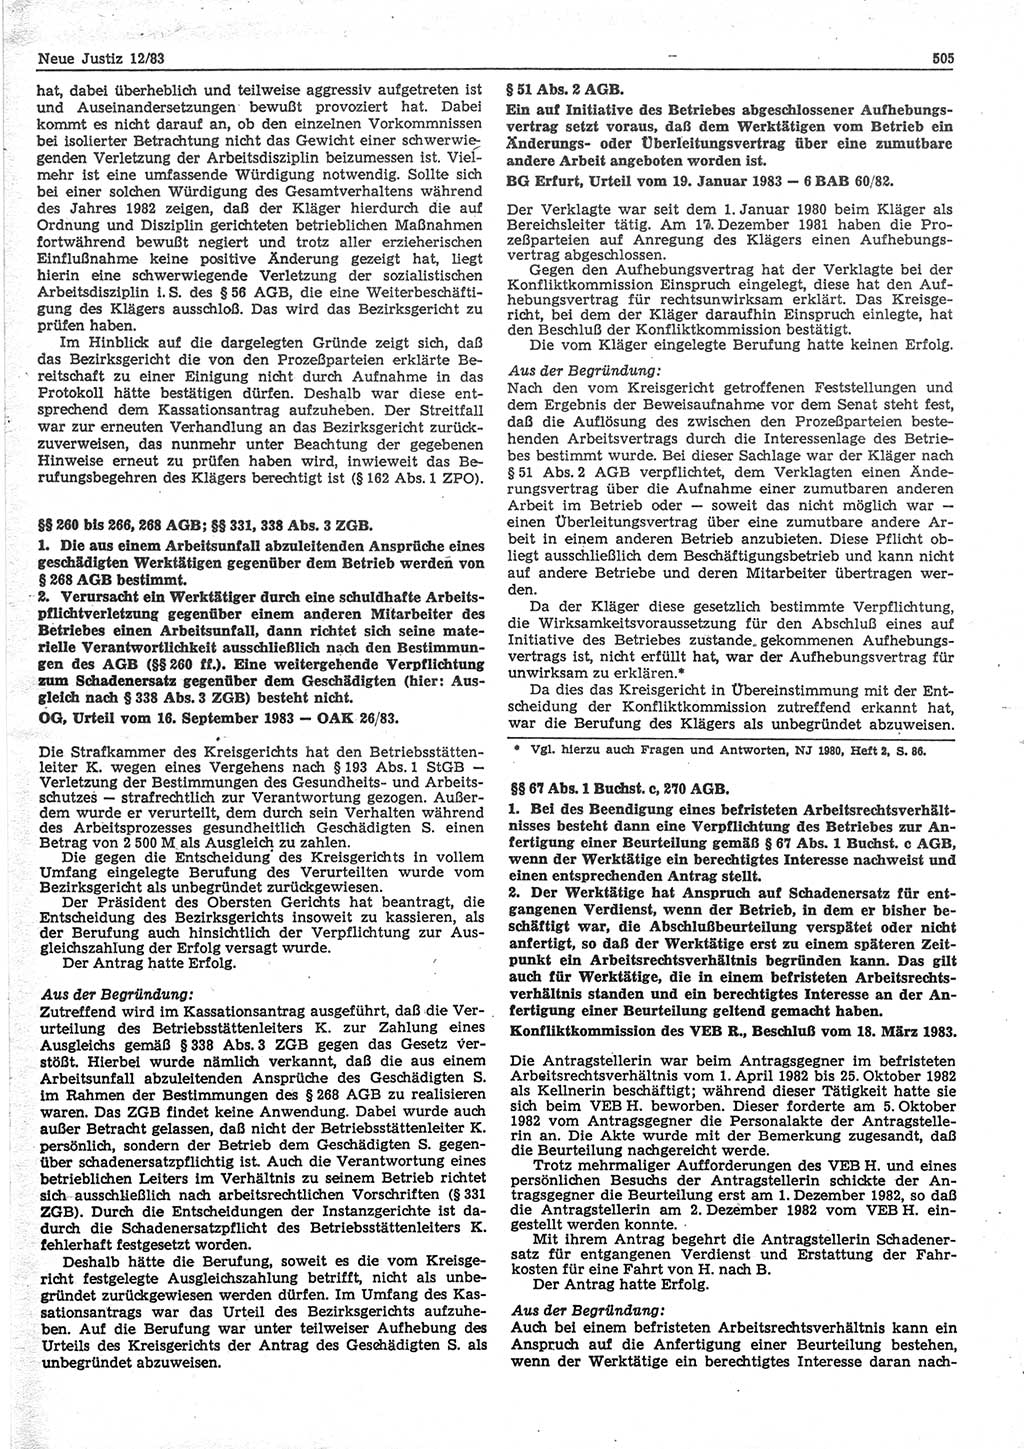 Neue Justiz (NJ), Zeitschrift für sozialistisches Recht und Gesetzlichkeit [Deutsche Demokratische Republik (DDR)], 37. Jahrgang 1983, Seite 505 (NJ DDR 1983, S. 505)